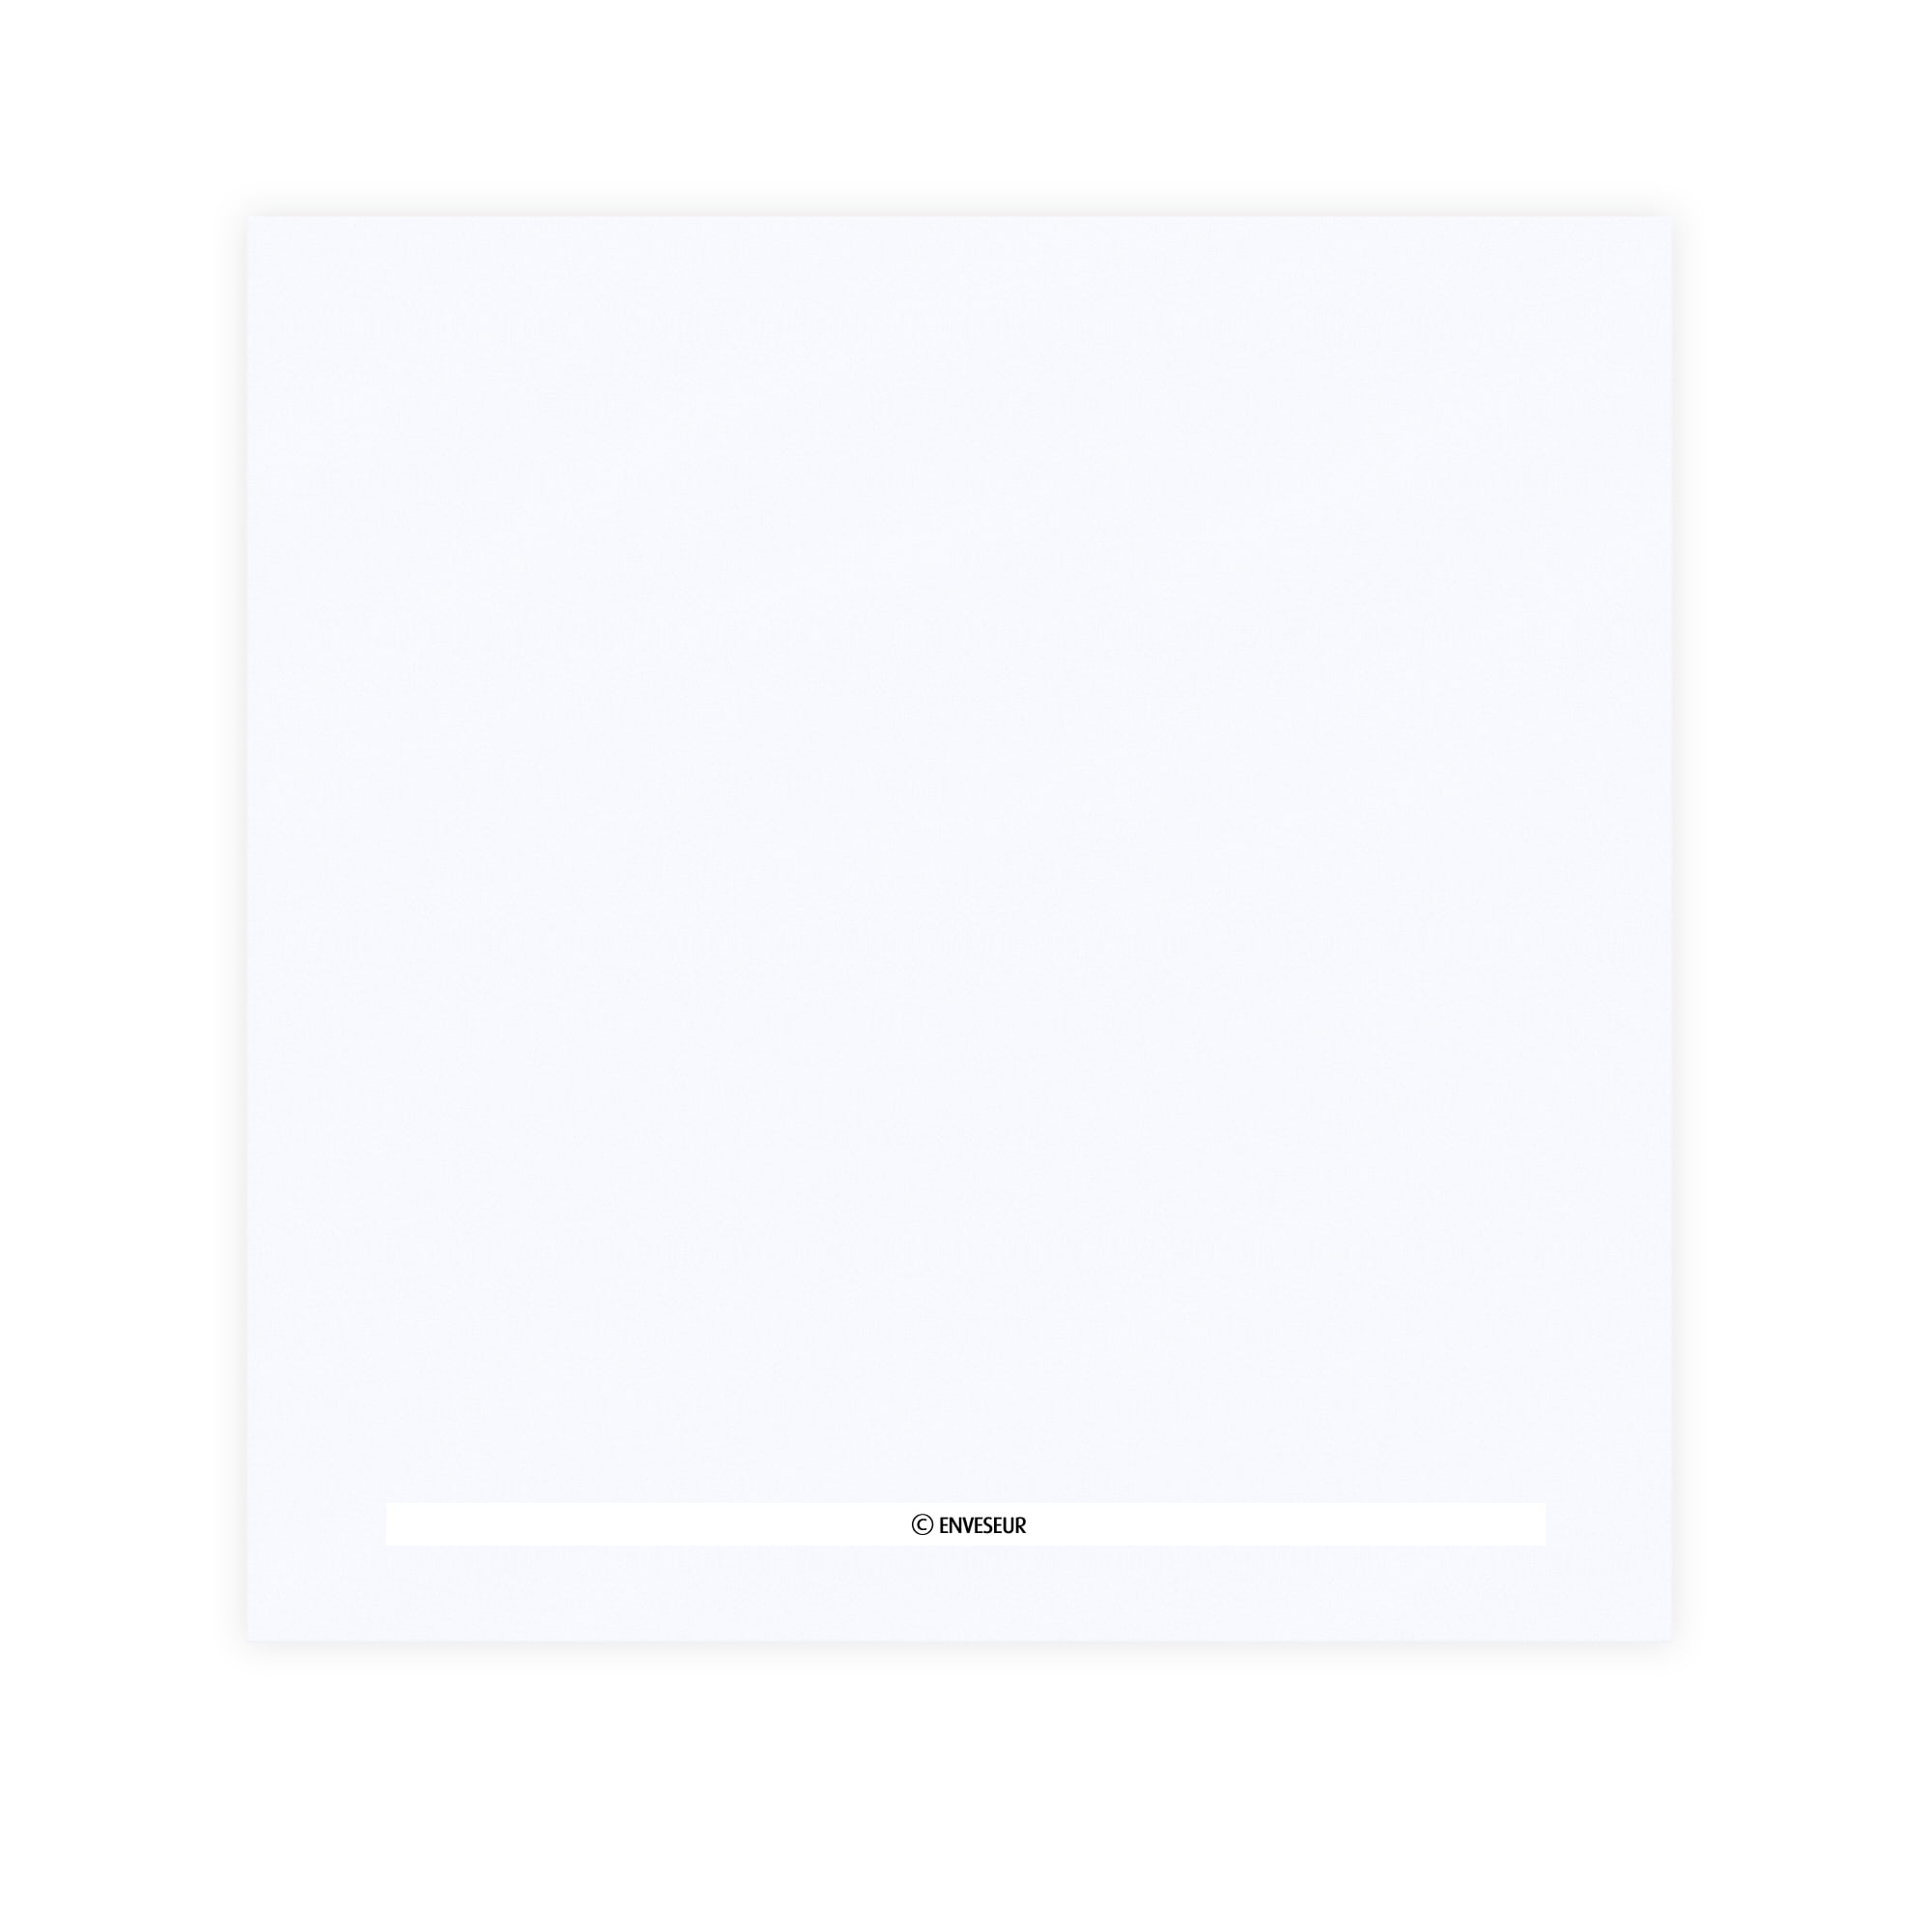 220x220 Enveloppe blanche